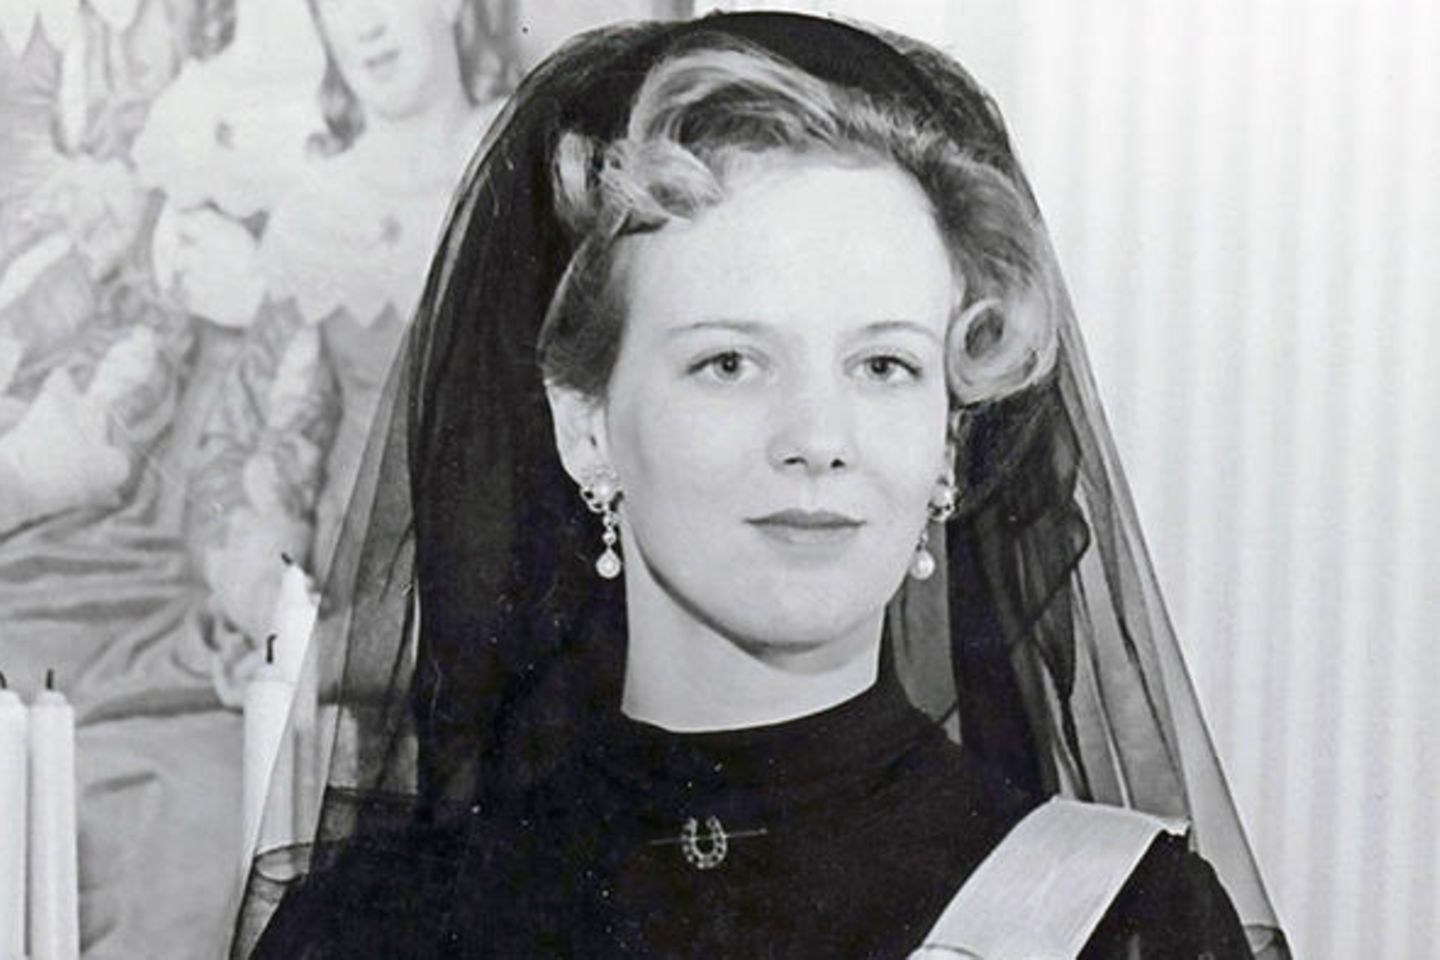 Königin Margrethe einen Tag nach dem Tod ihres Vaters und ihrer Ernennung zur Königin am 15. Januar, 1972.